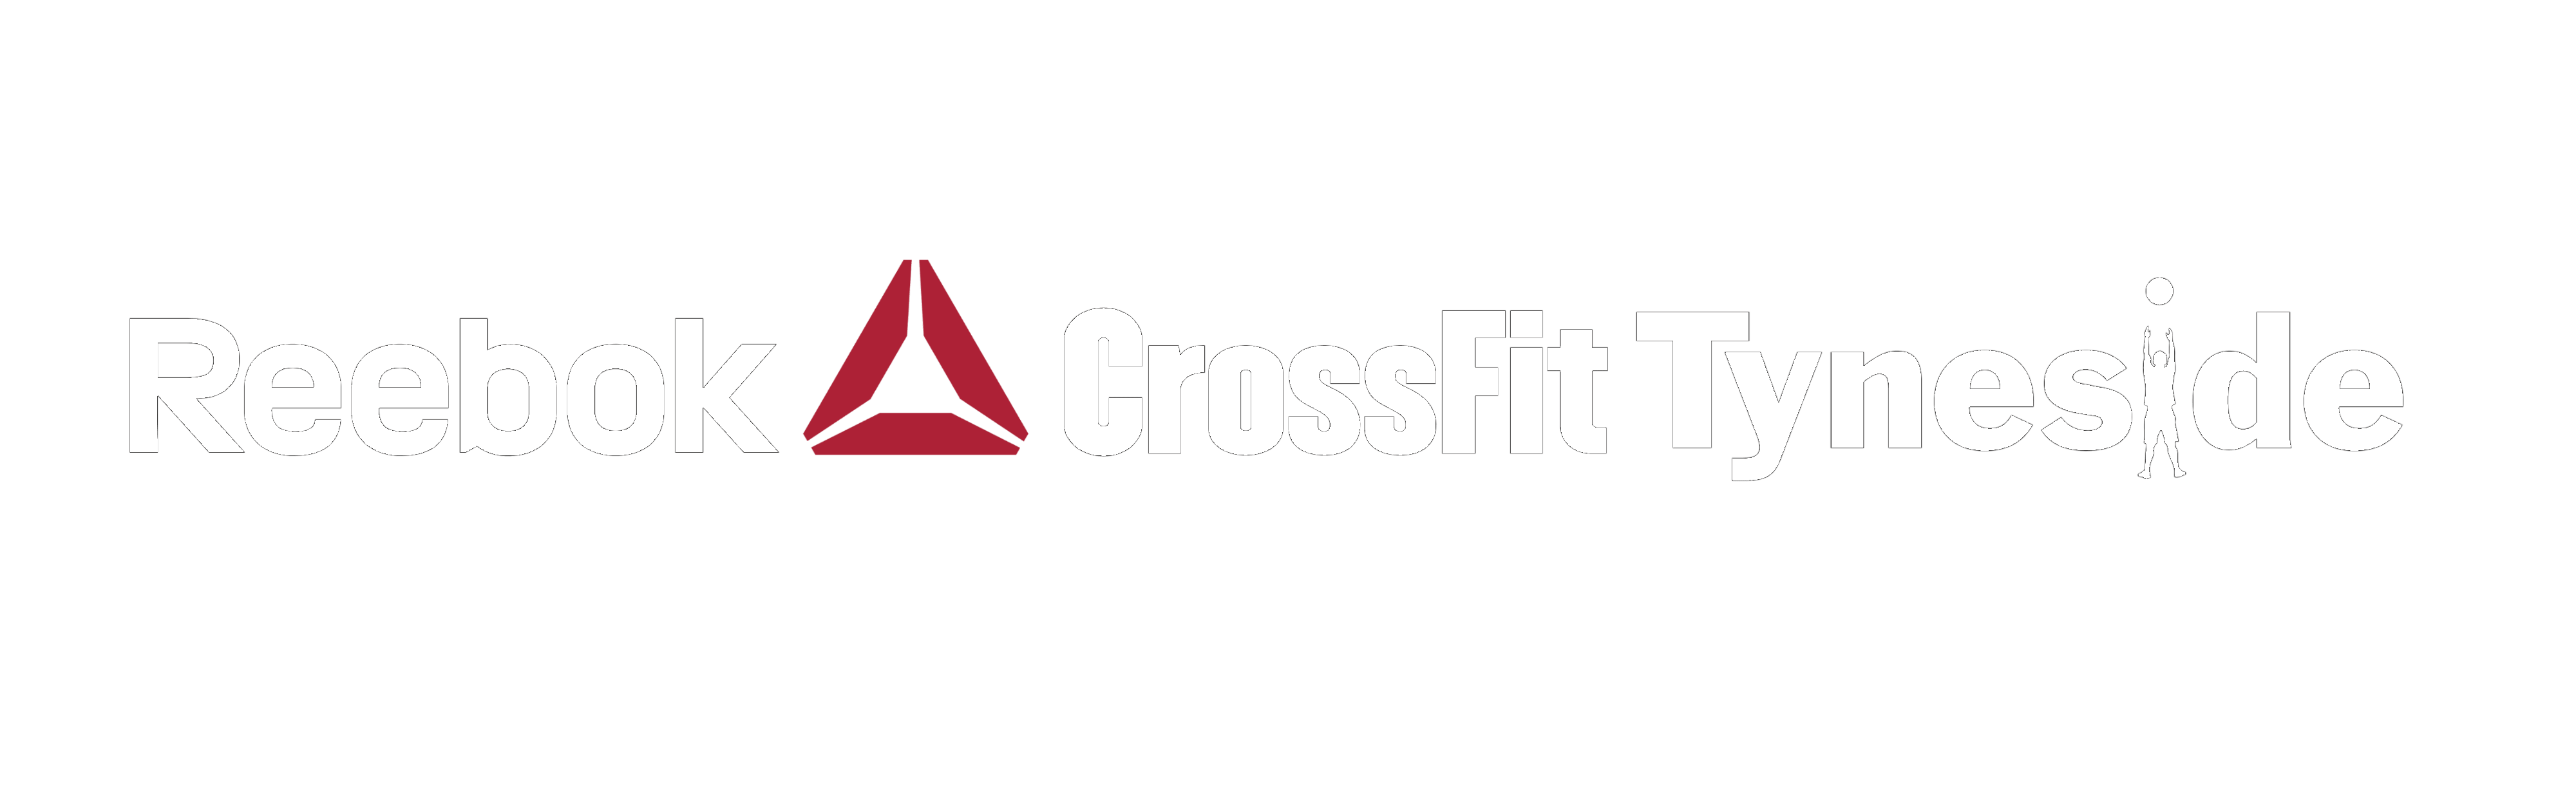 Reebok CrossFit Triangle Logo - Reebok CrossFit Tyneside | The Sport of Fitness